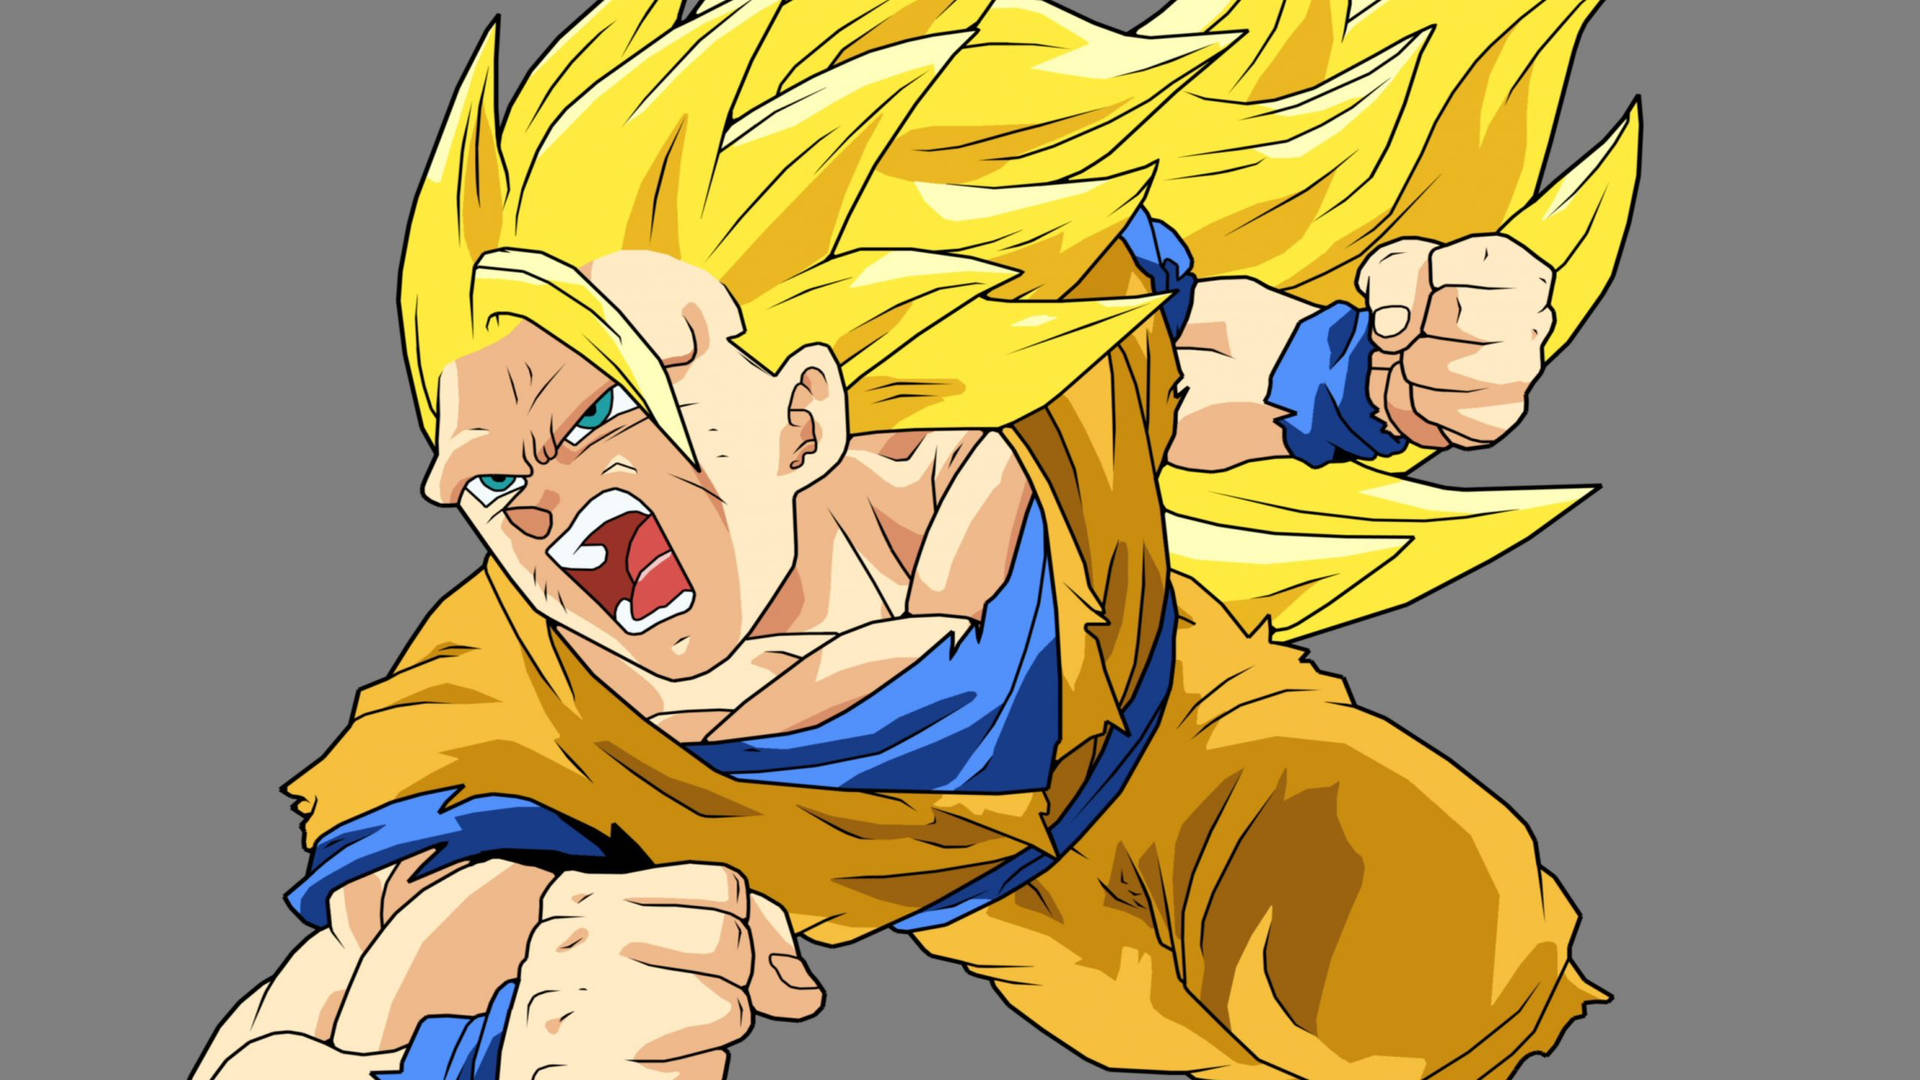 Goku In Super Saiyan 3 Transformation, Unleashing His Power Wallpaper